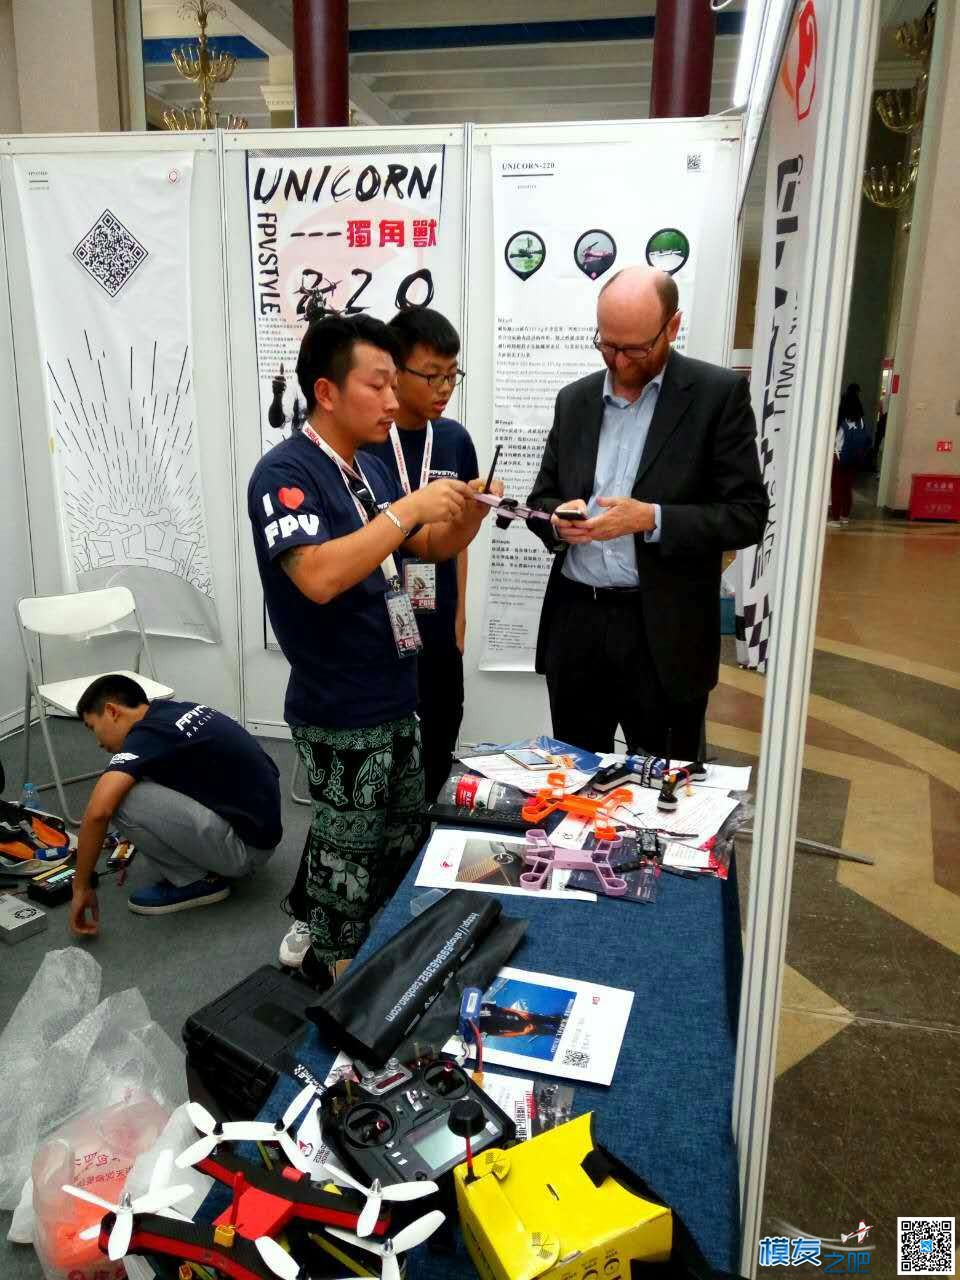 独角兽unicorn220北京国际航模展发布 北京国际,独角兽 作者:FPV-FINE 3500 